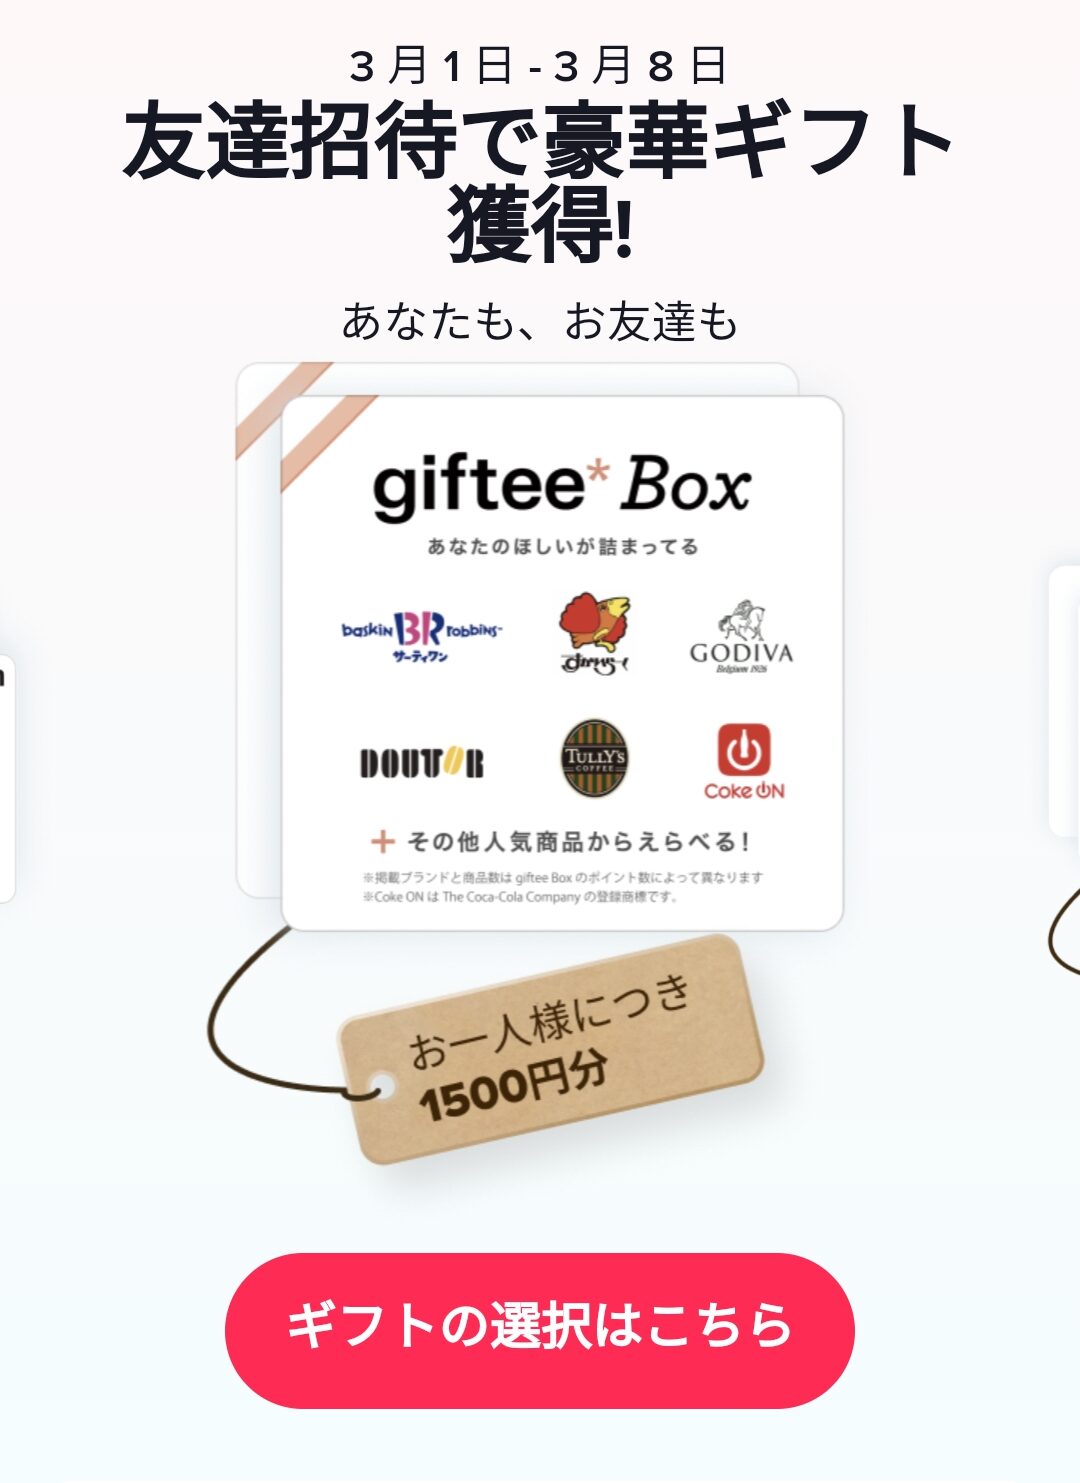 【更に増額して過去最高】TikTokを新規インストールするともれなくアマゾンギフト券またはGiftee Box、えらべるPay2500円分が貰える。8/5～8/10。